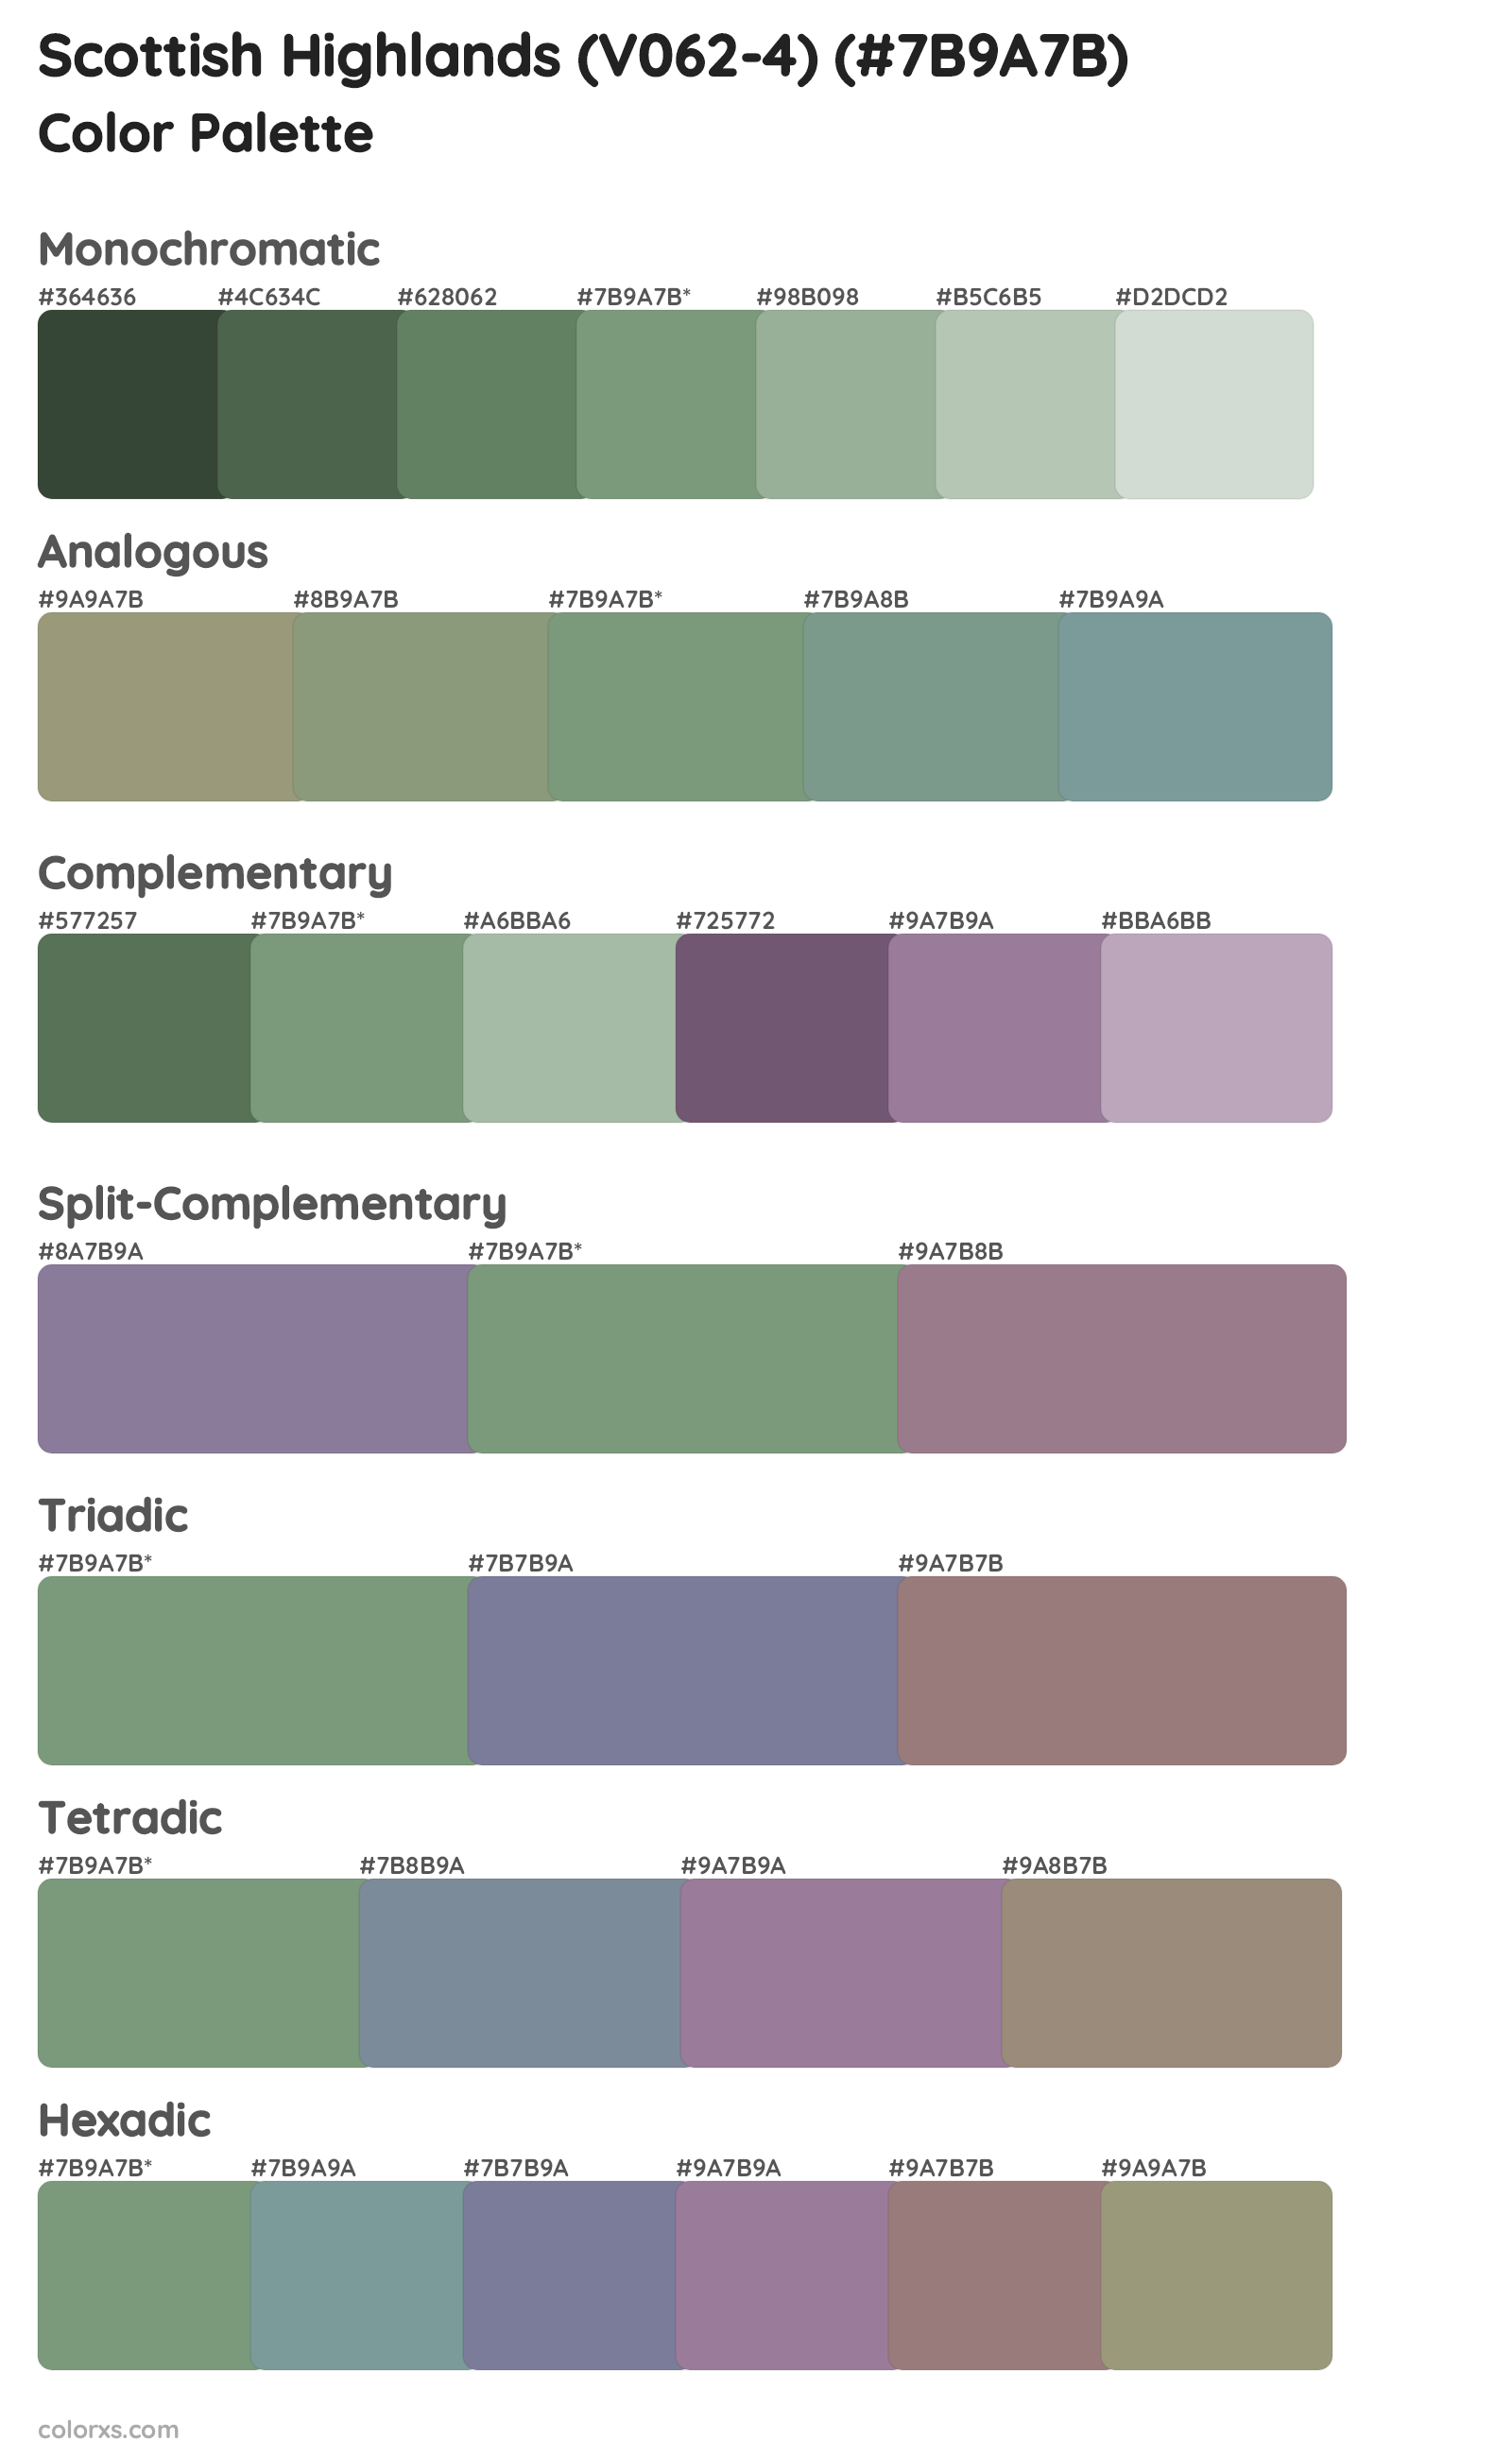 Scottish Highlands (V062-4) Color Scheme Palettes